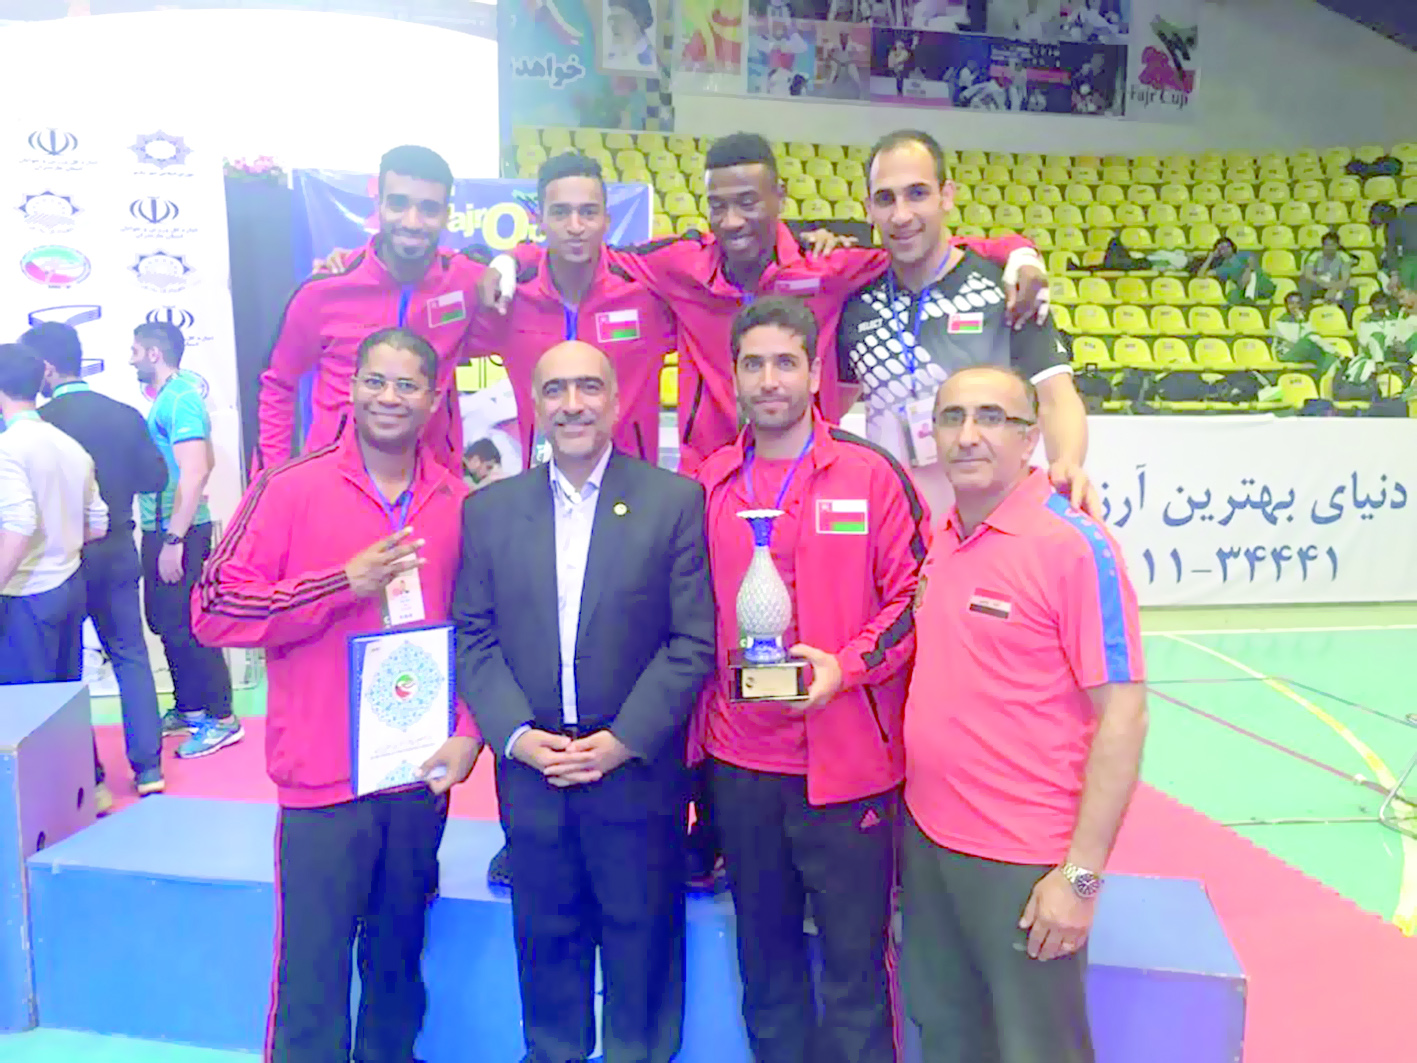 منتخب التايكواندو يحقق الميدالية البرونزية في بطولة الأندية الآسيوية بإيران